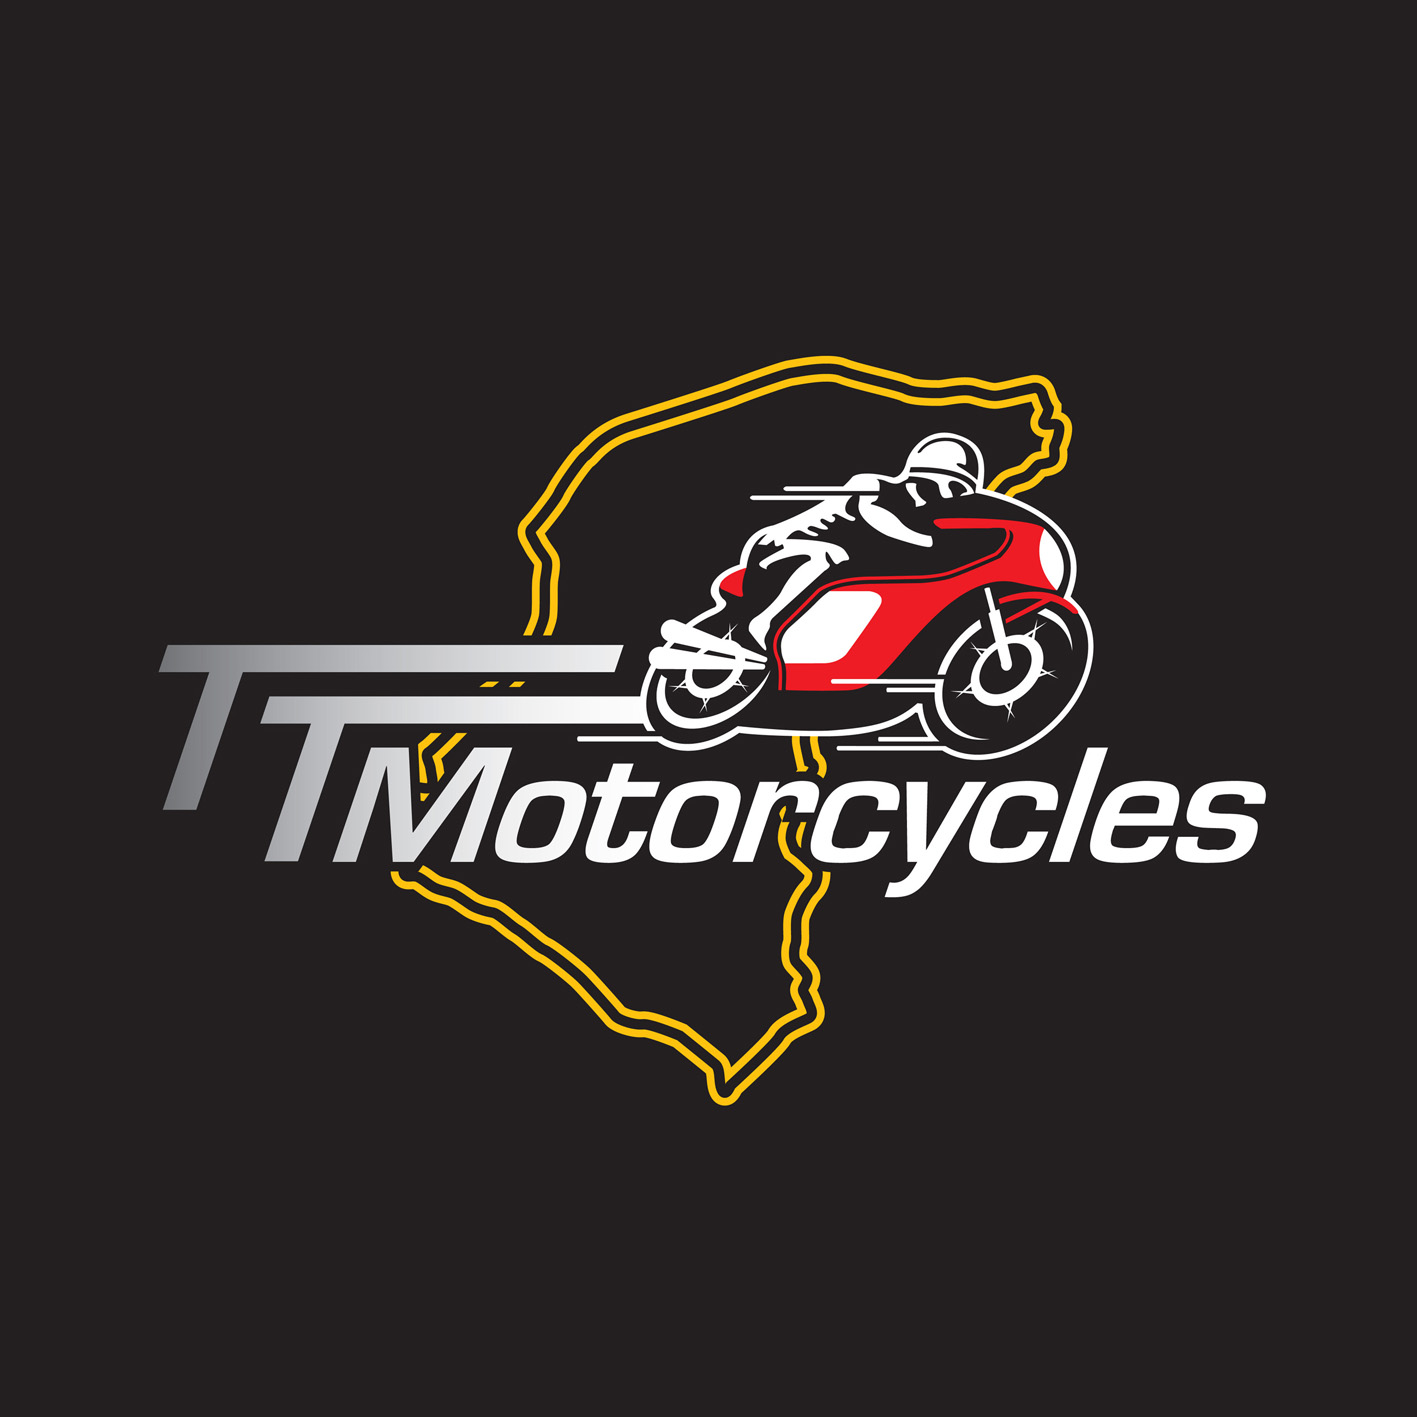 TT Motorcycles